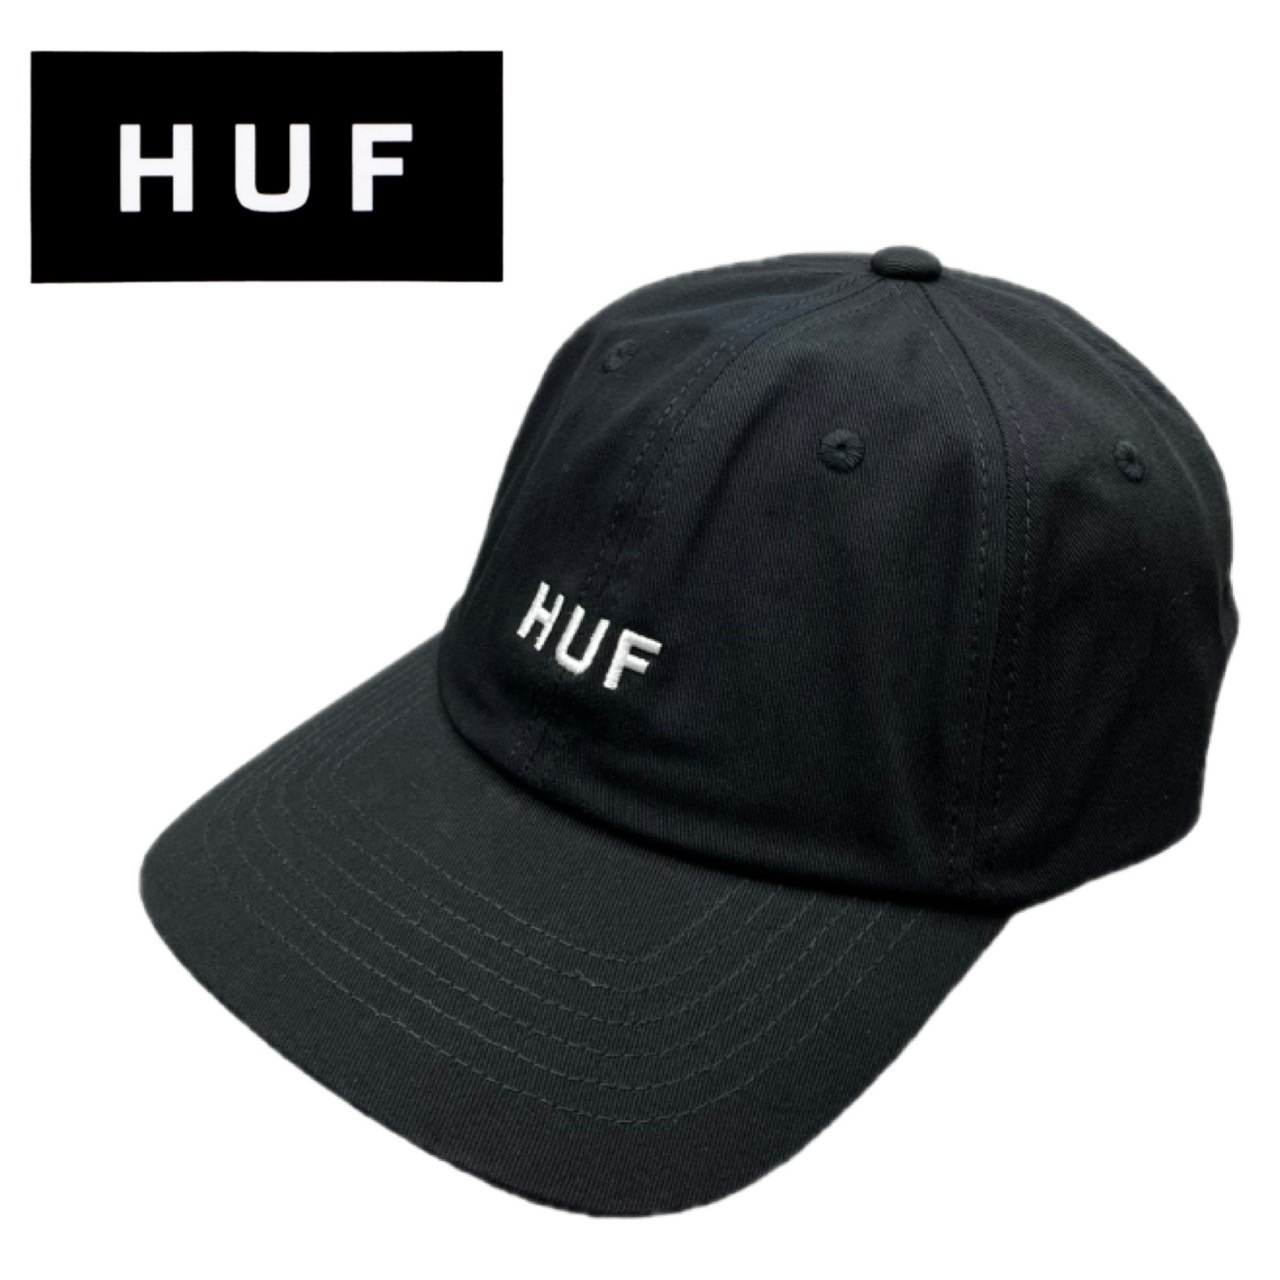 ハフ HUF キャップ 帽子 HT00716 メンズ レディース ワンサイズ ハット 調節可能 6パ...